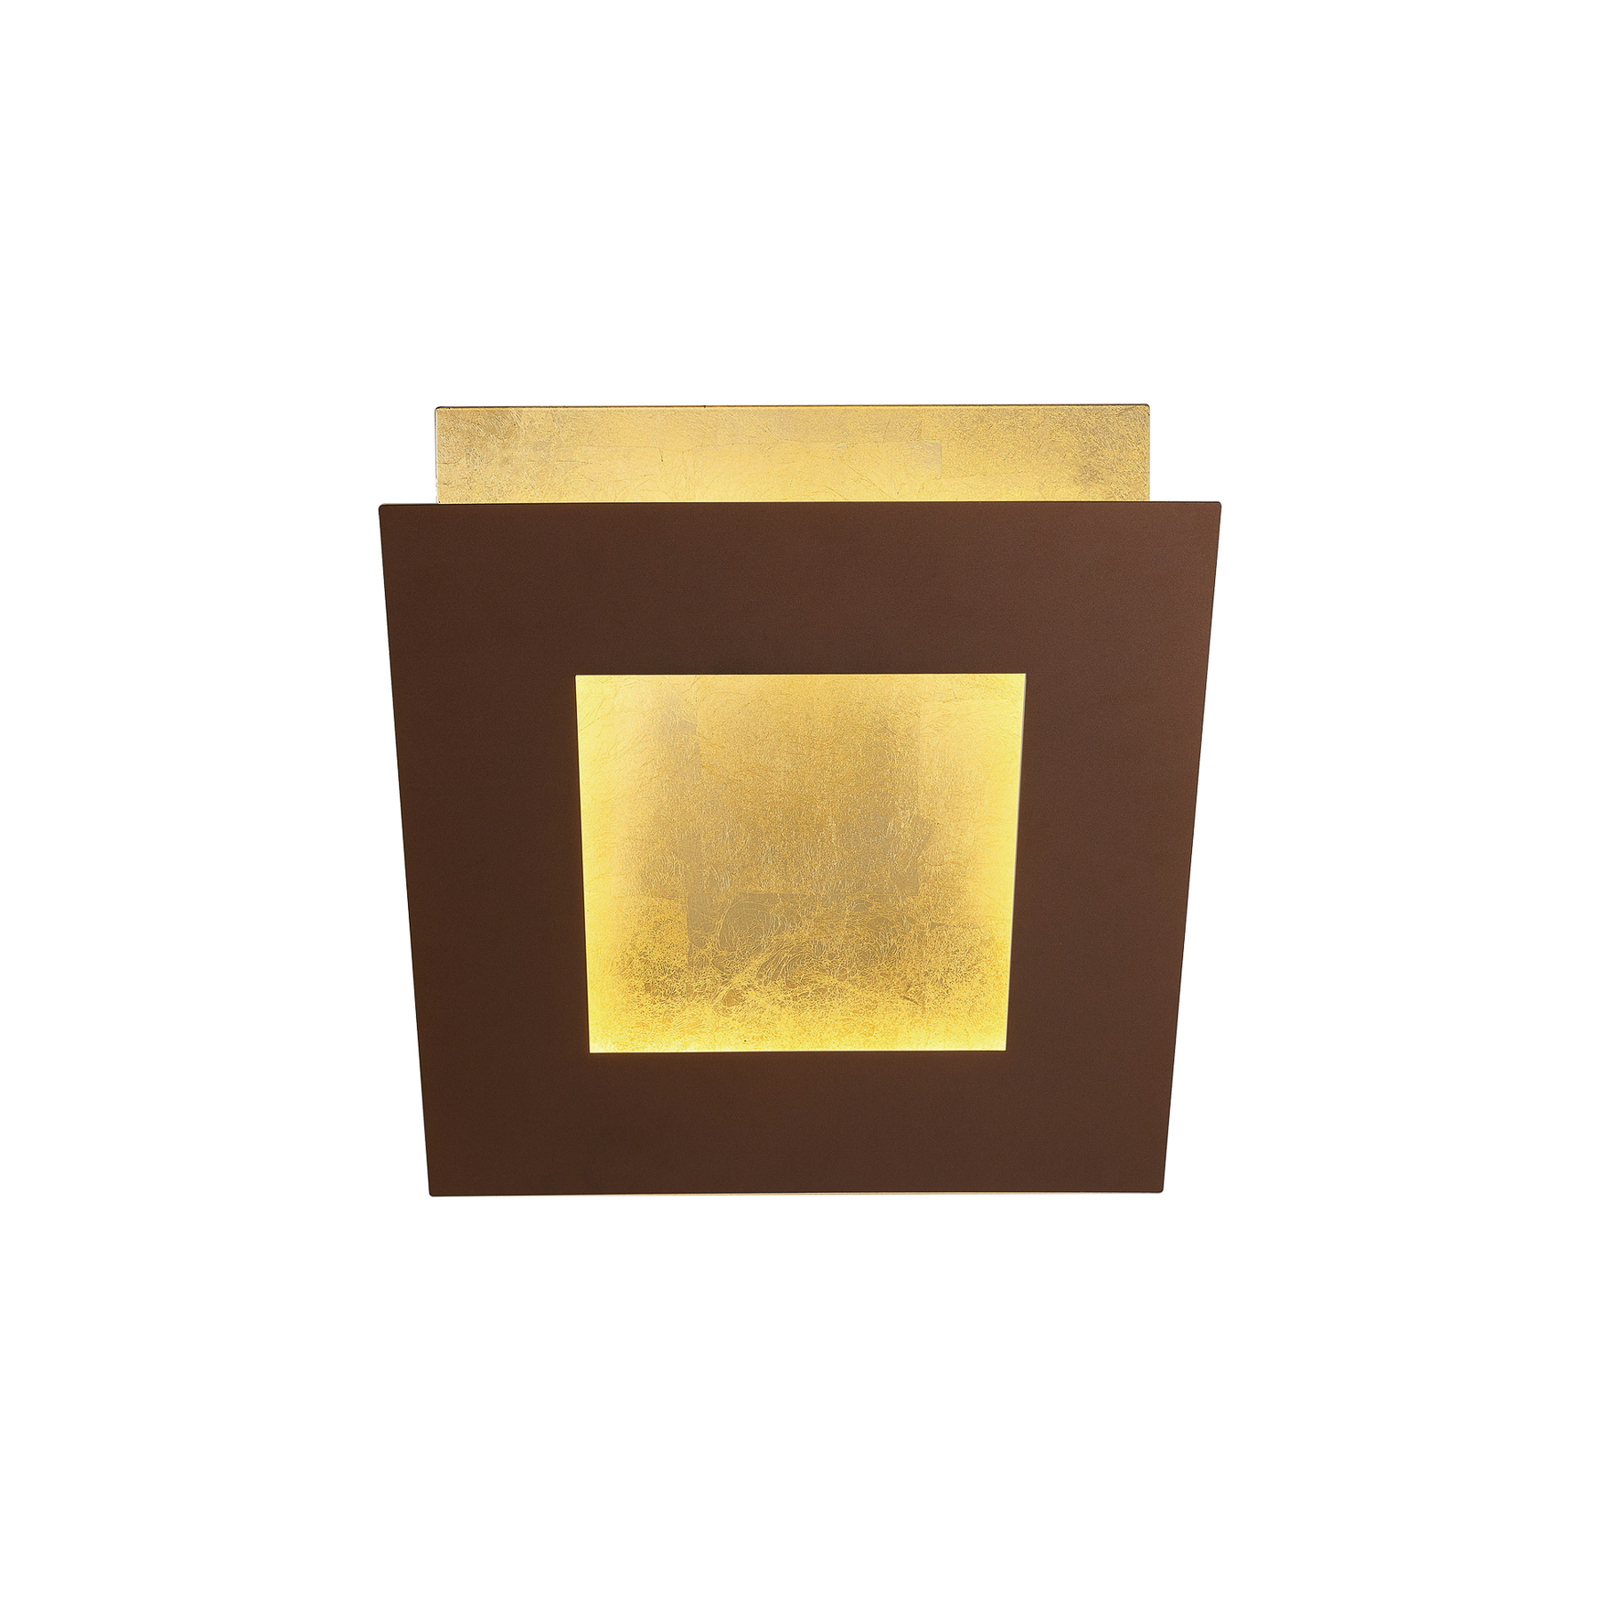 LED-Wandleuchte Dalia, corten/gold, 18 x 18 cm, Aluminium